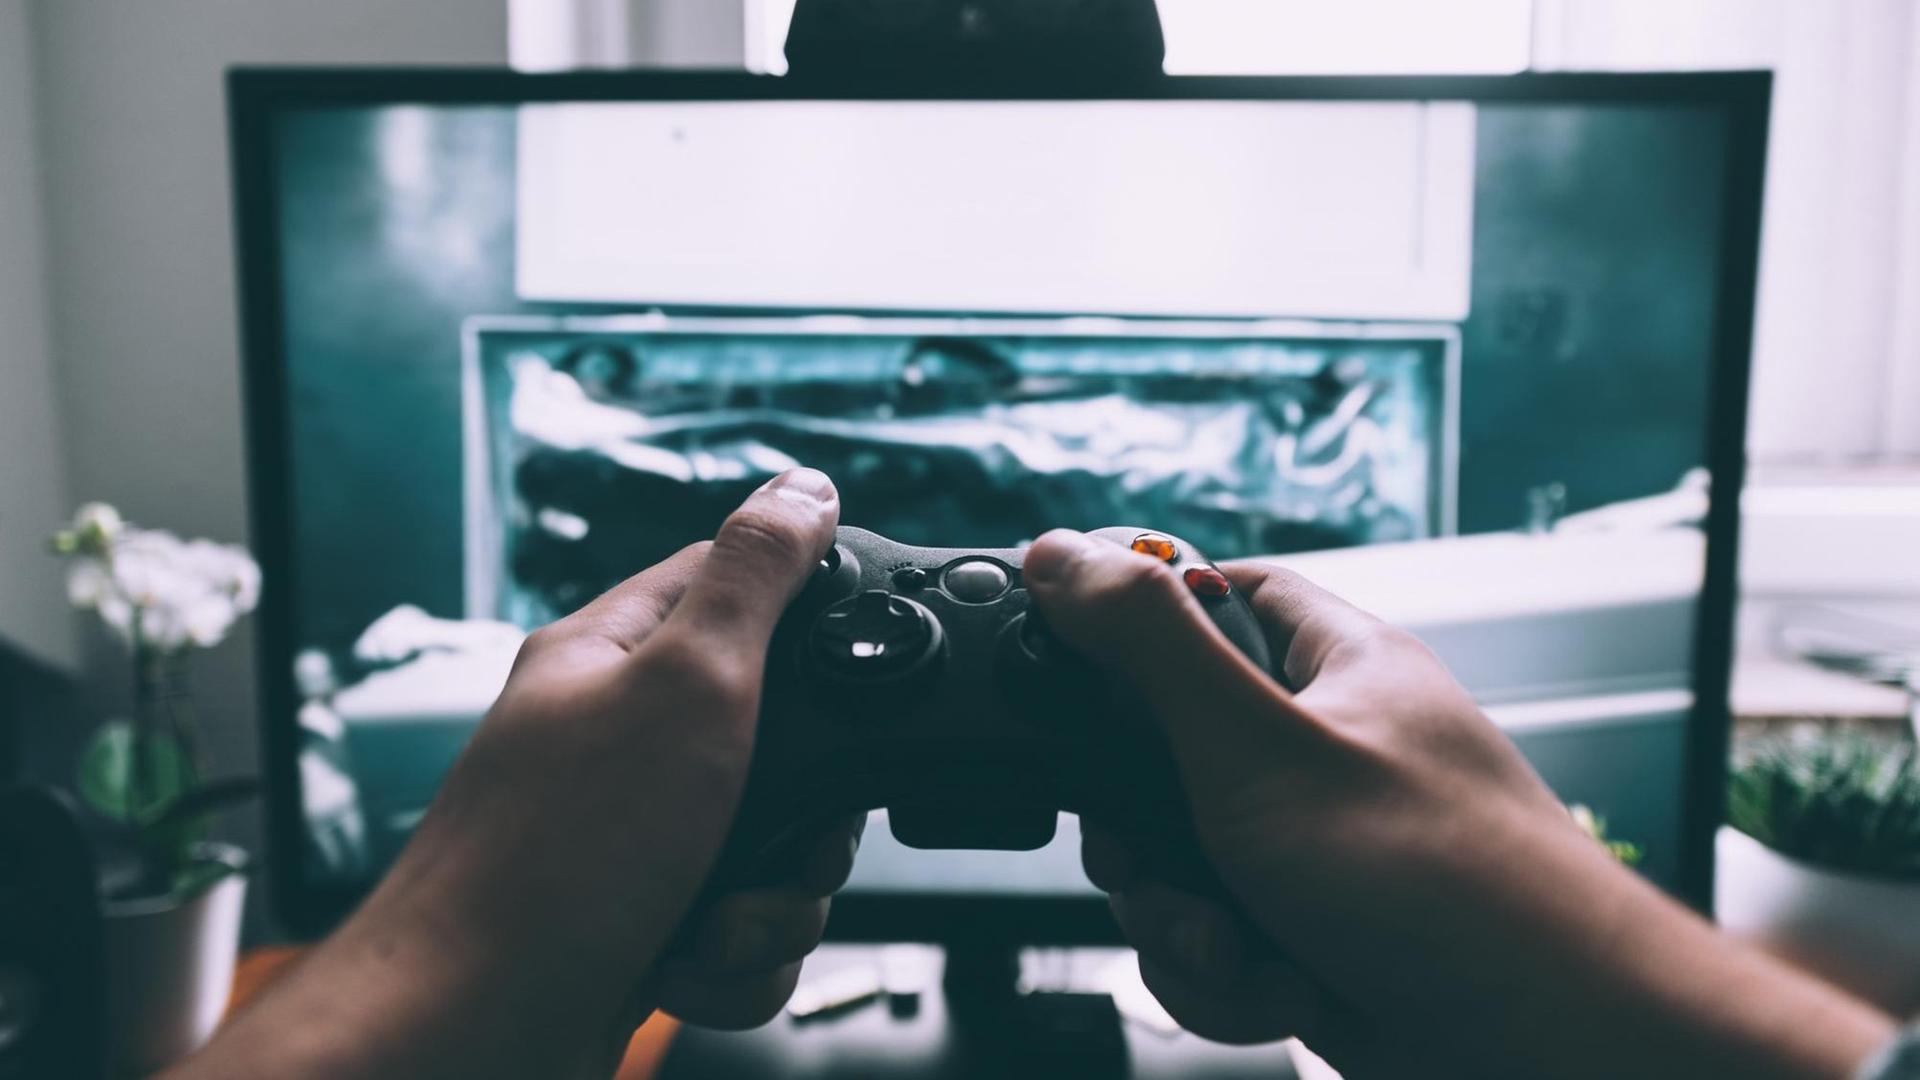 Ein Fernseher, auf dem ein Computerspiel läuft, im Vordergrund Hände, die eine Spielekonsole halten.